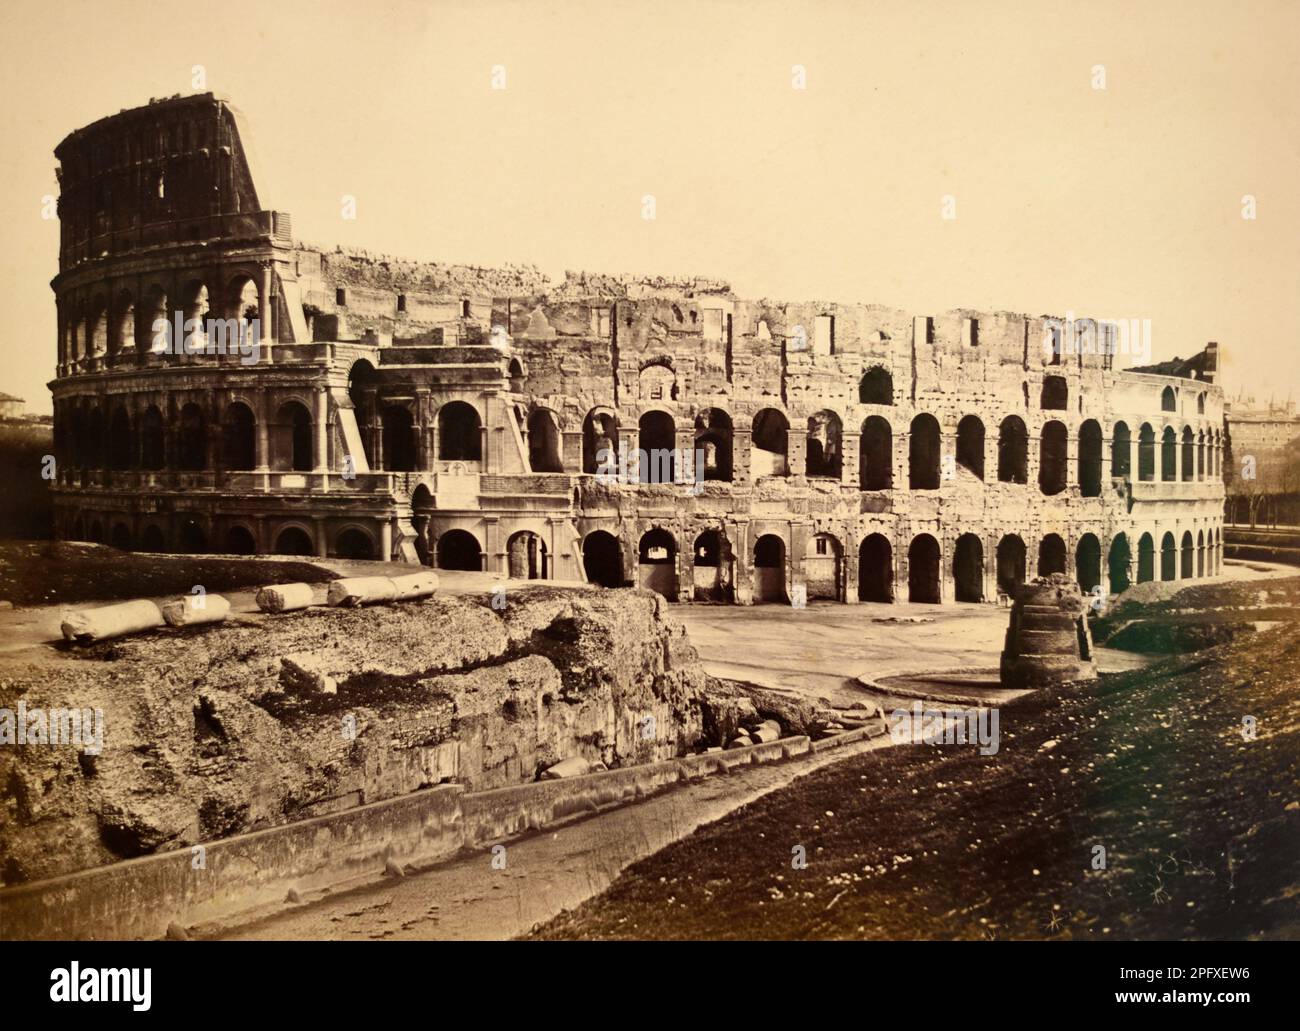 Kolosseum c1853 von James Anderson. Klassisches Schwarz-Weiß- oder Sepia-Foto des römischen Amphitheaters Kolosseum (72-80AD) Rom Italien. Stockfoto